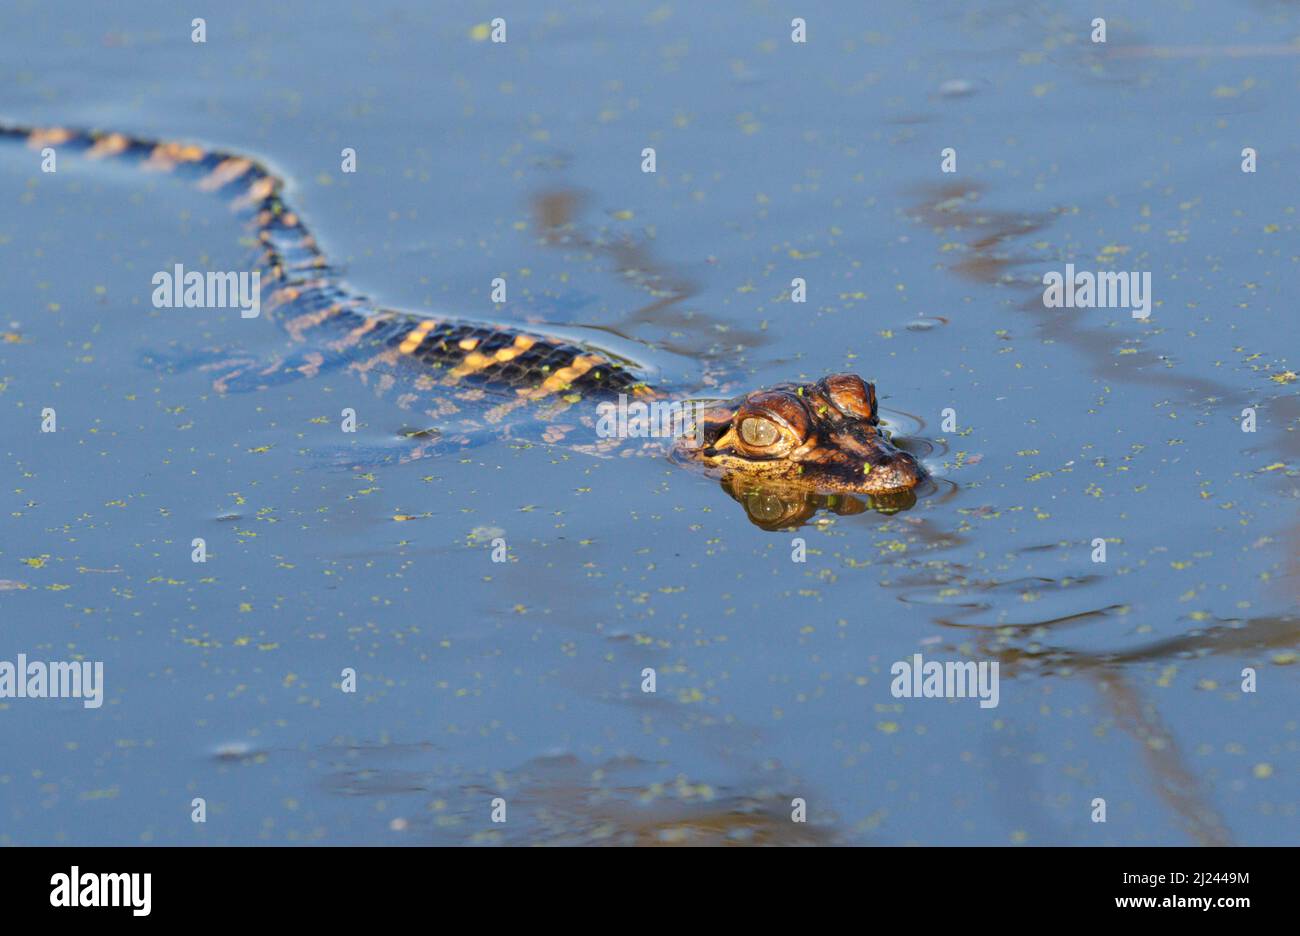 Bébé alligator américain (Alligator mississippiensis) nageant dans un lac forestier, parc régional de Brazos Bend, Needville, Texas, États-Unis. Banque D'Images